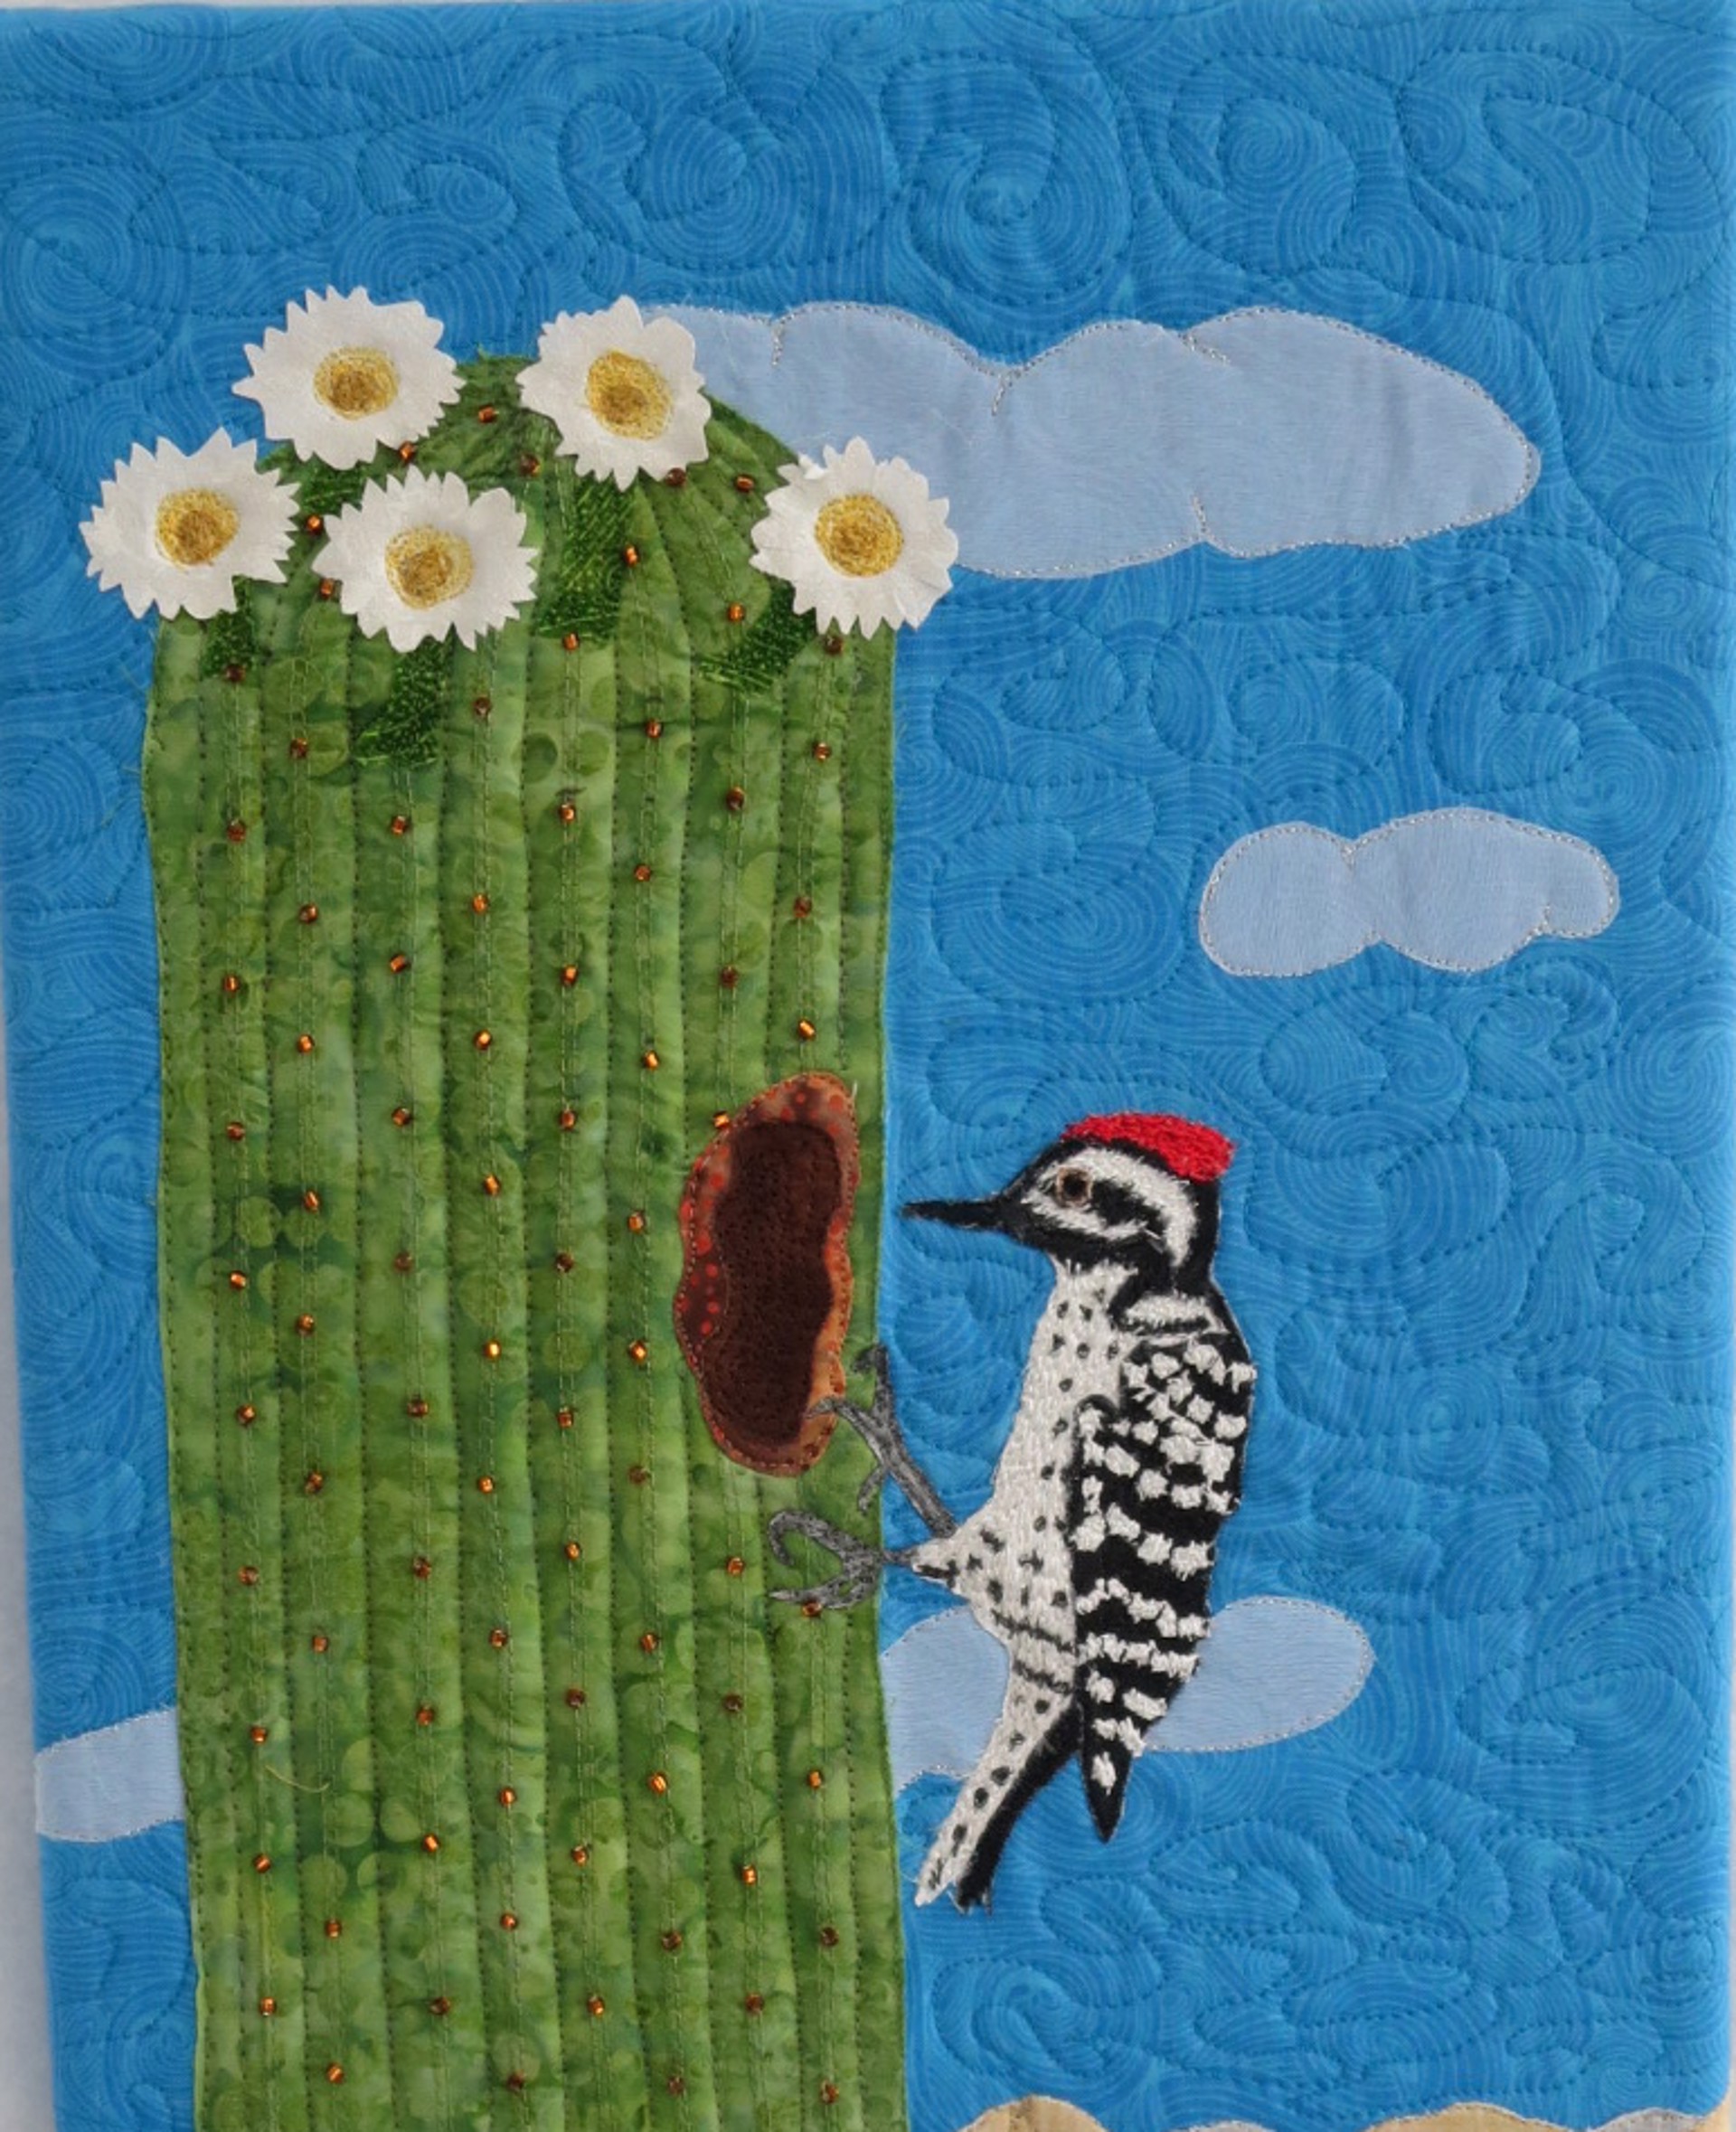 Woodpecker 1 by Cheryl Langer